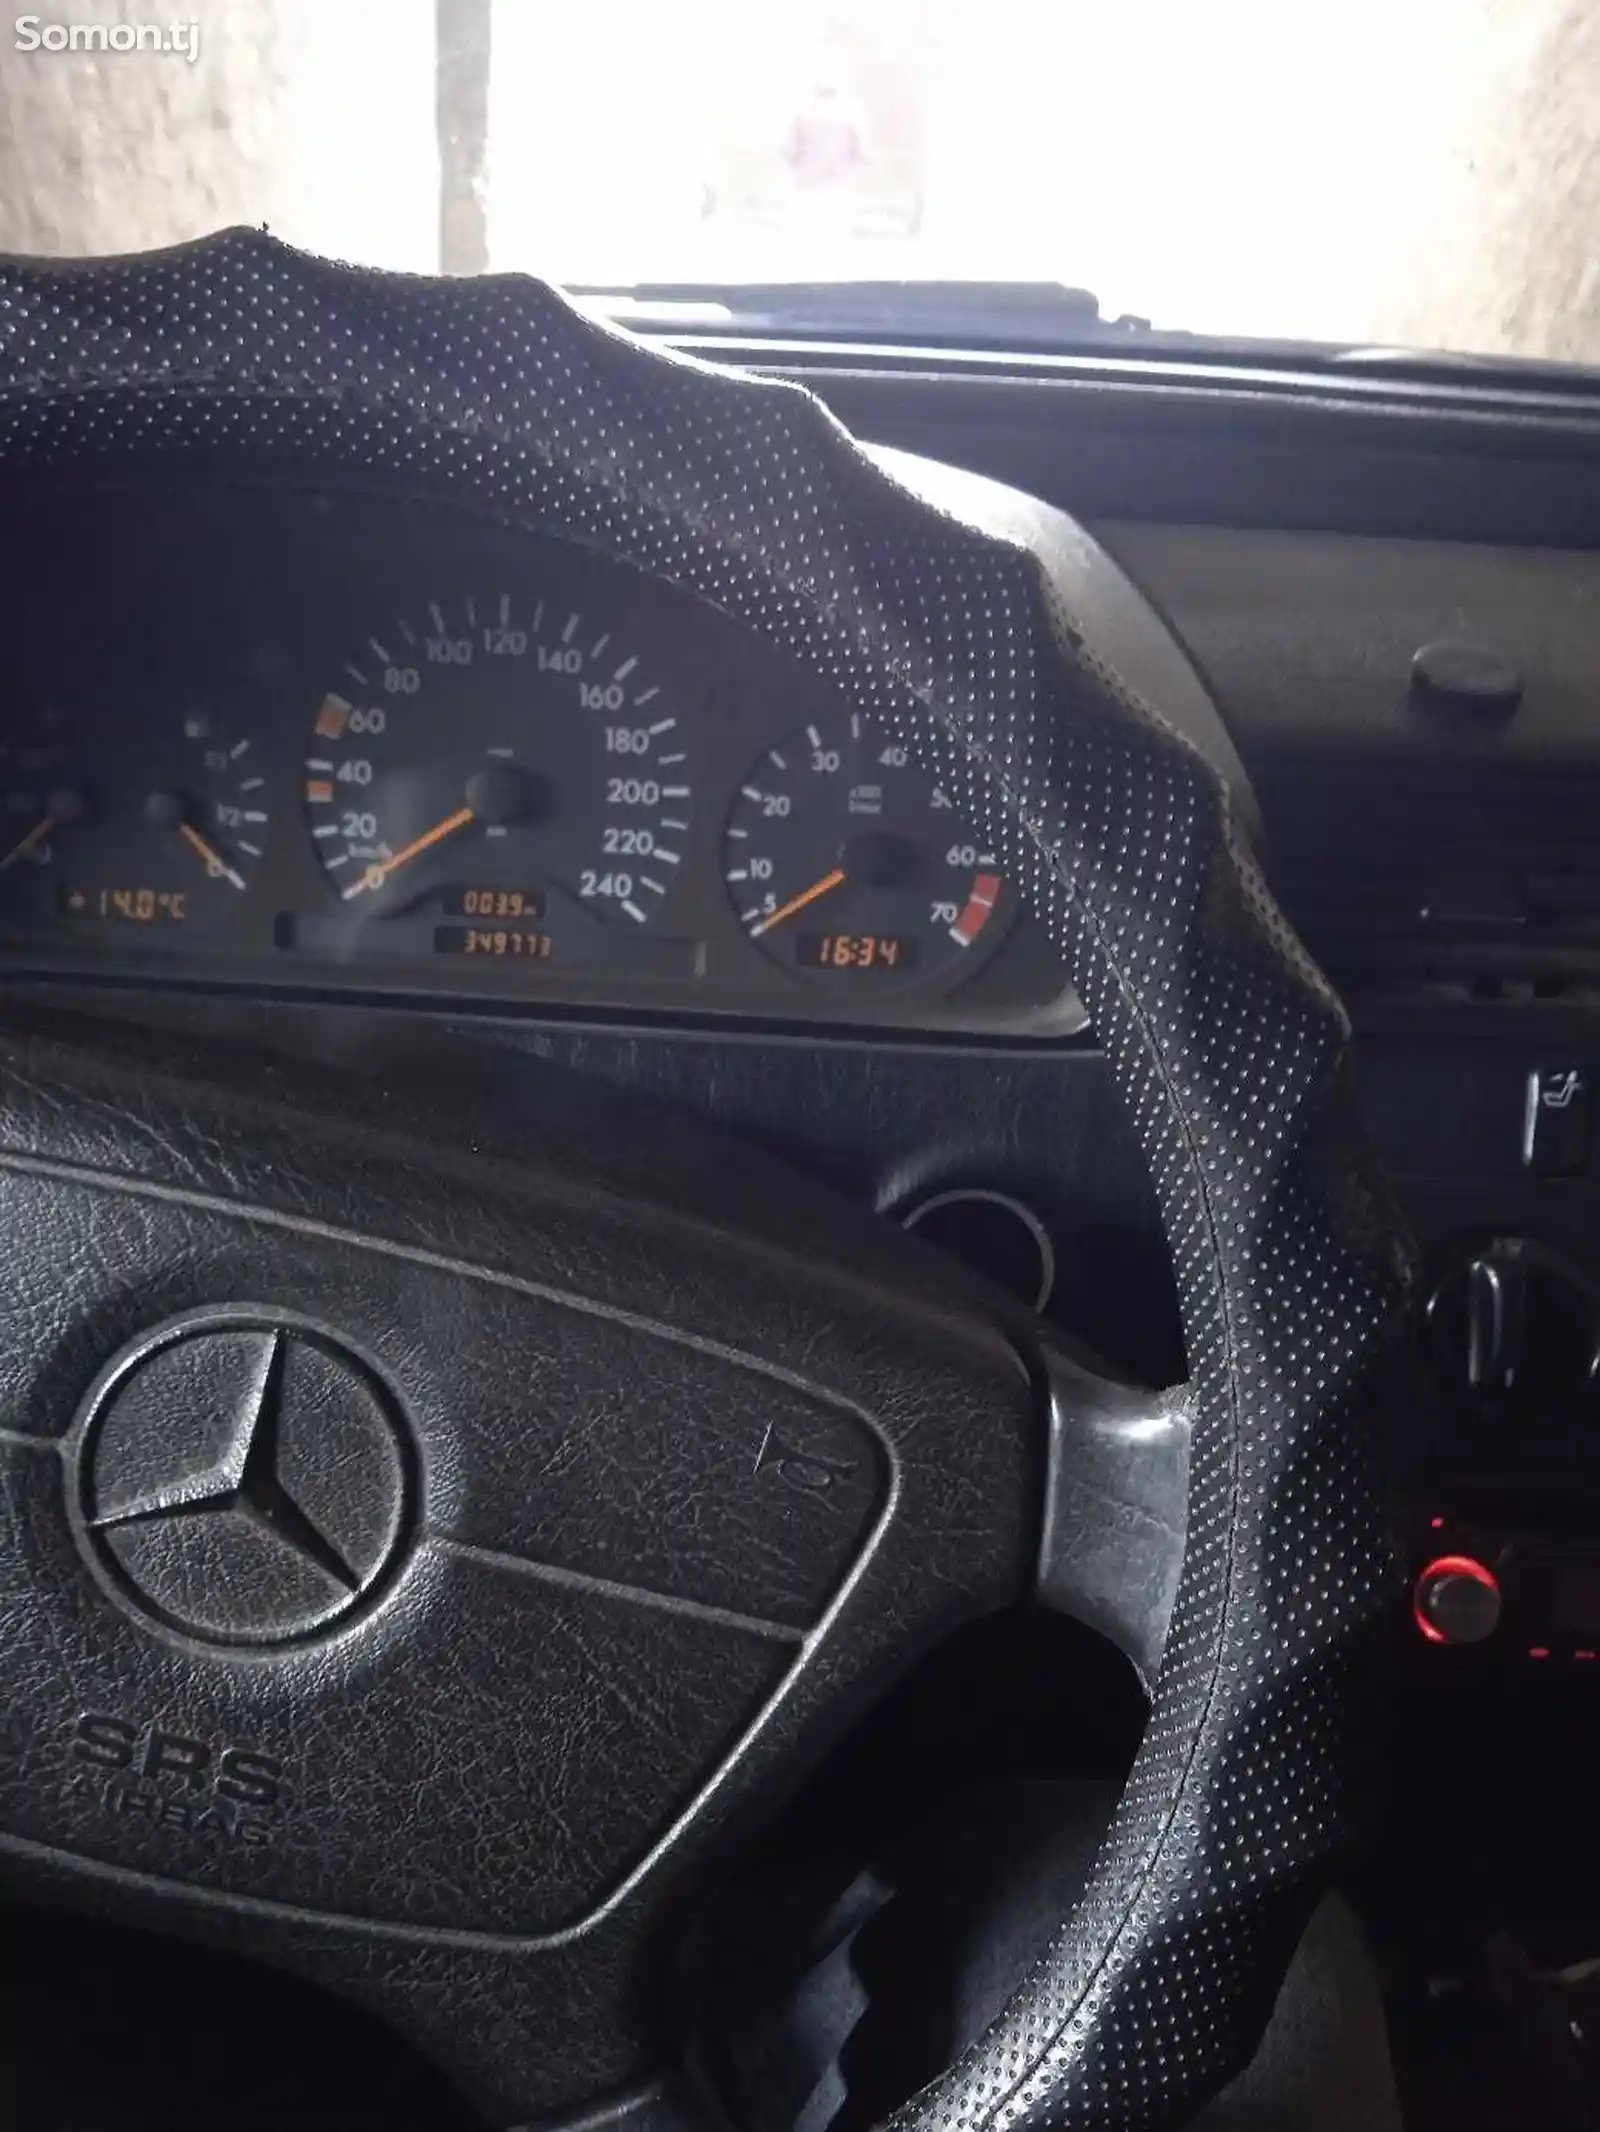 Mercedes-Benz C class, 1997-5